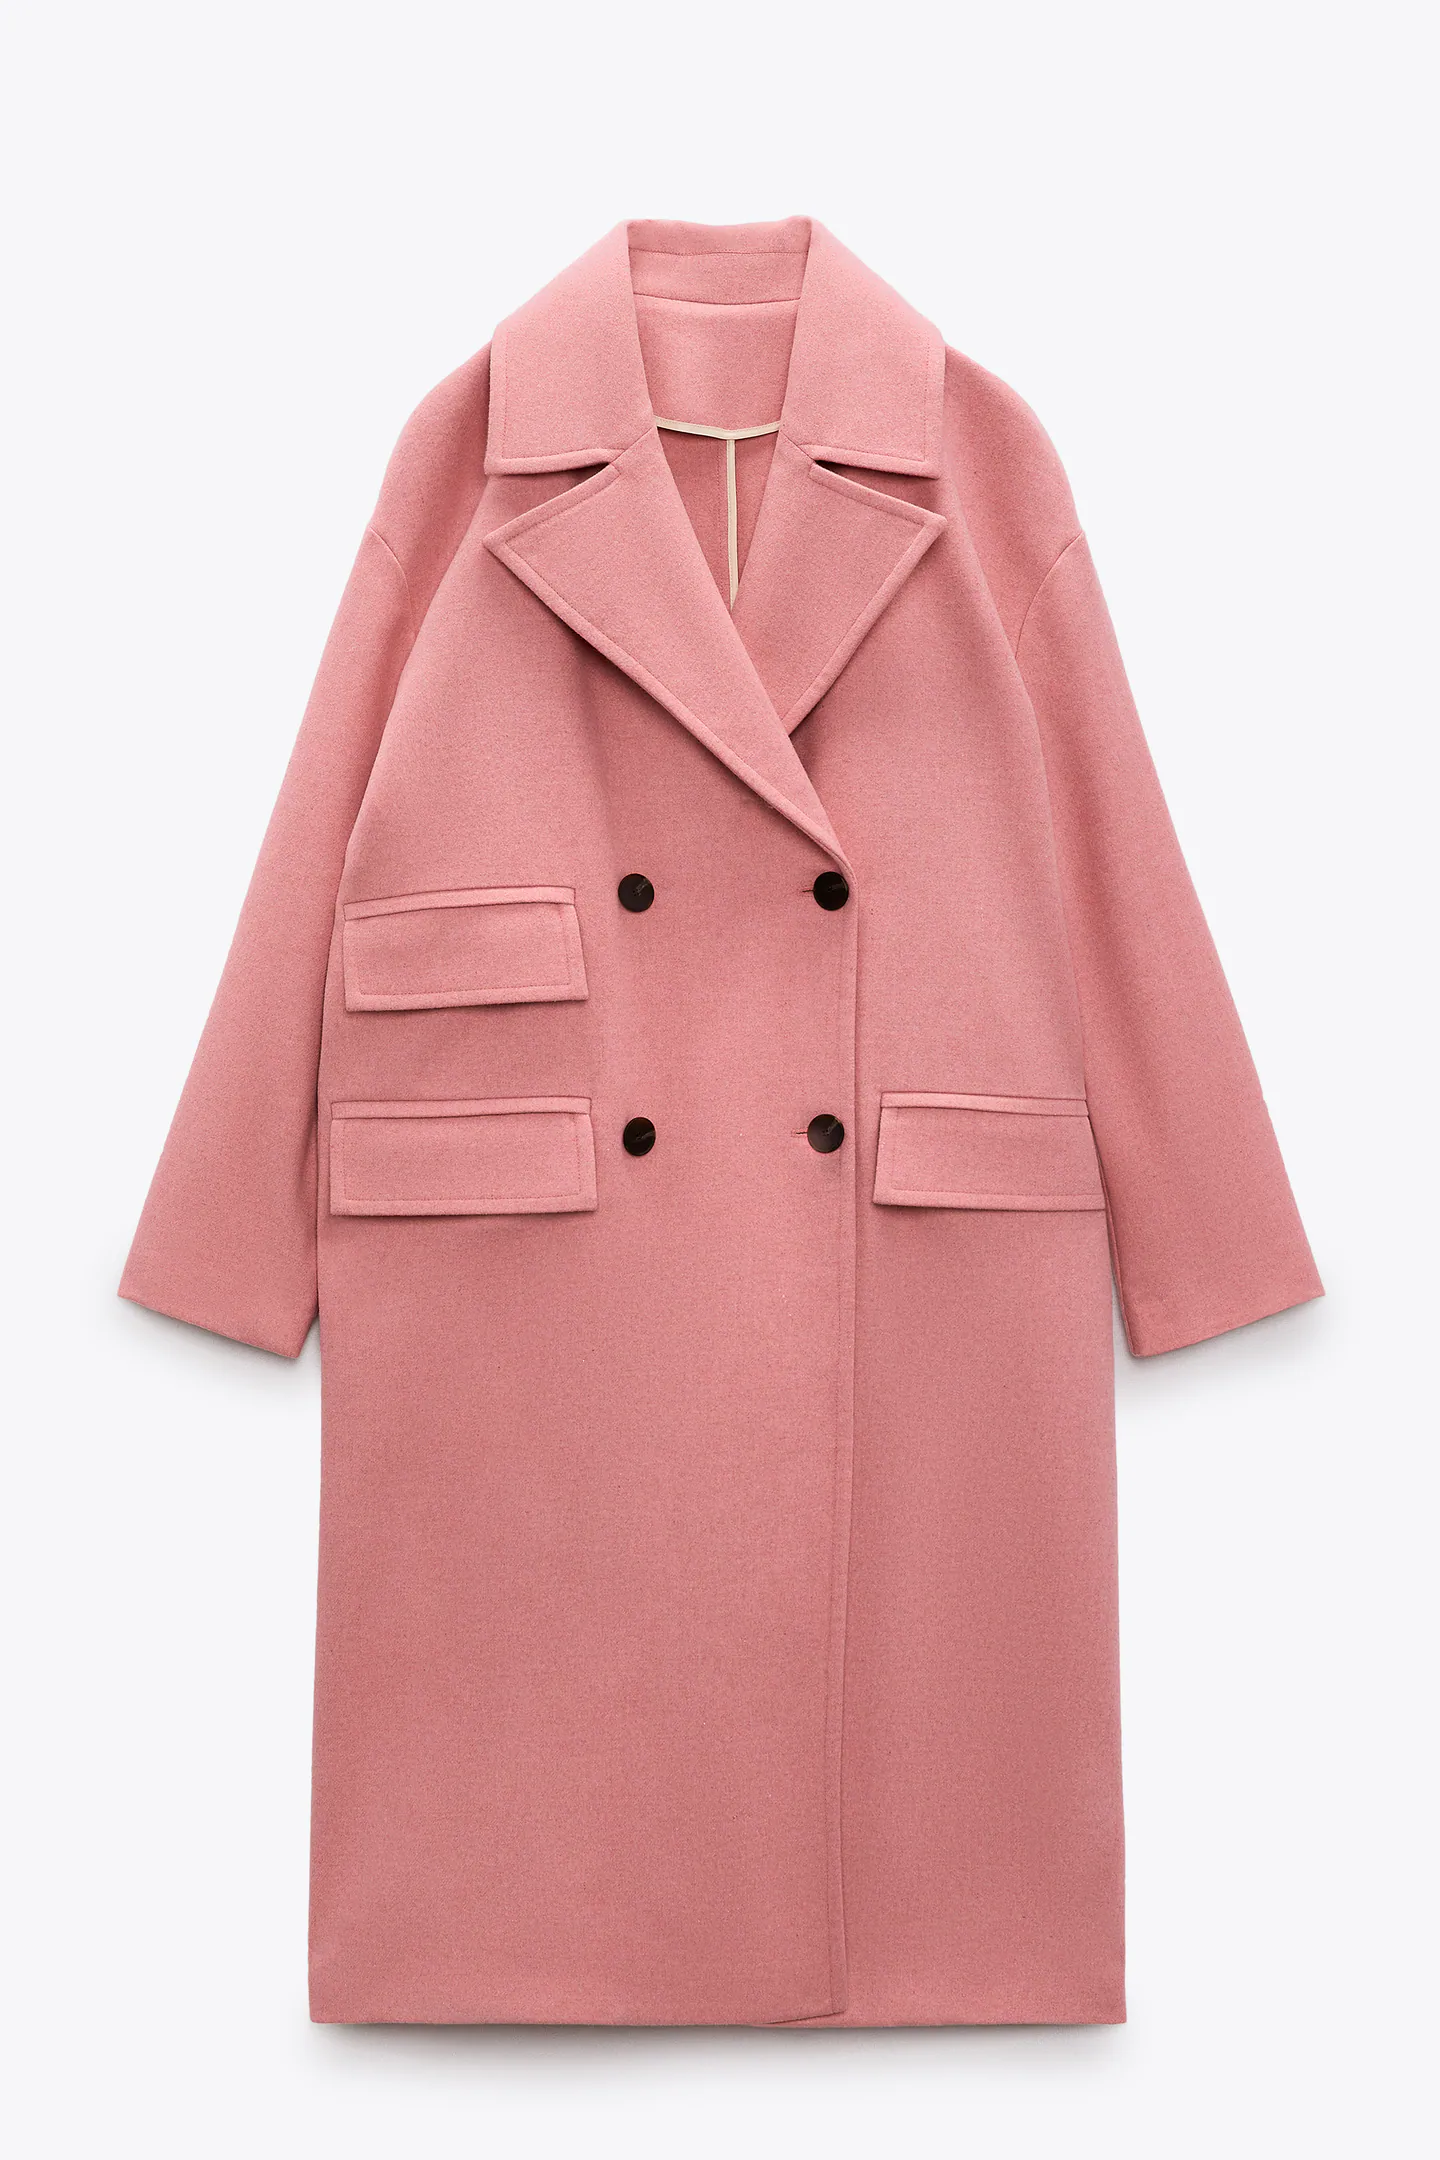 Abrigo rosa, de Zara.